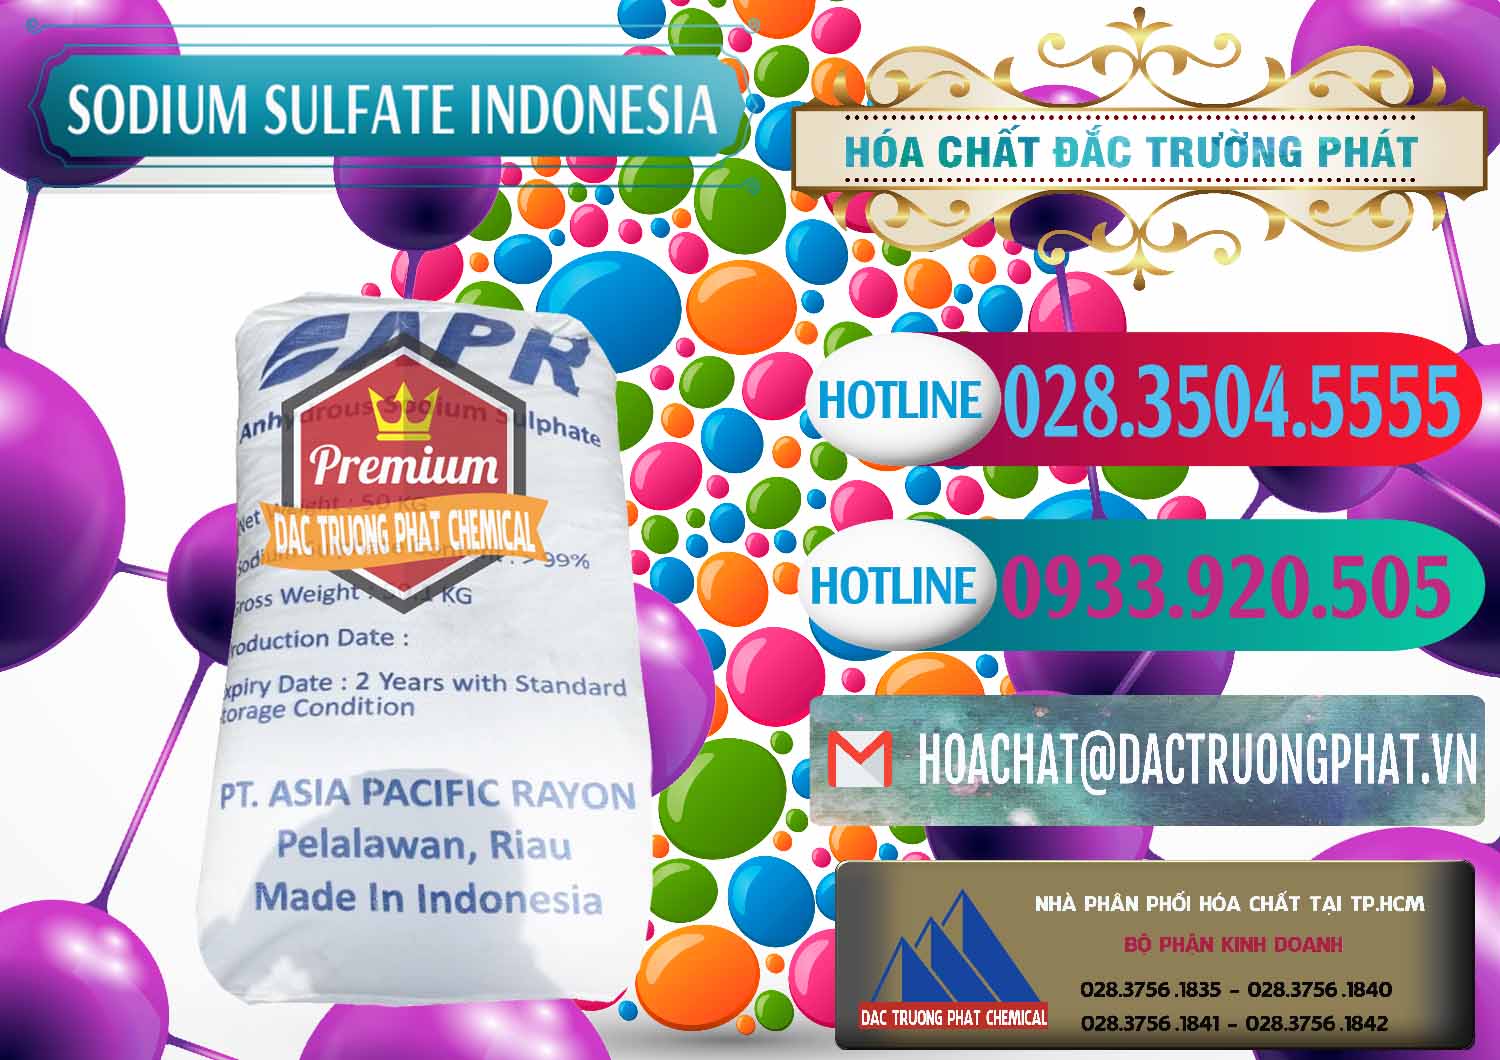 Công ty cung cấp - bán Sodium Sulphate - Muối Sunfat Na2SO4 APR Indonesia - 0460 - Chuyên cung cấp - bán hóa chất tại TP.HCM - truongphat.vn